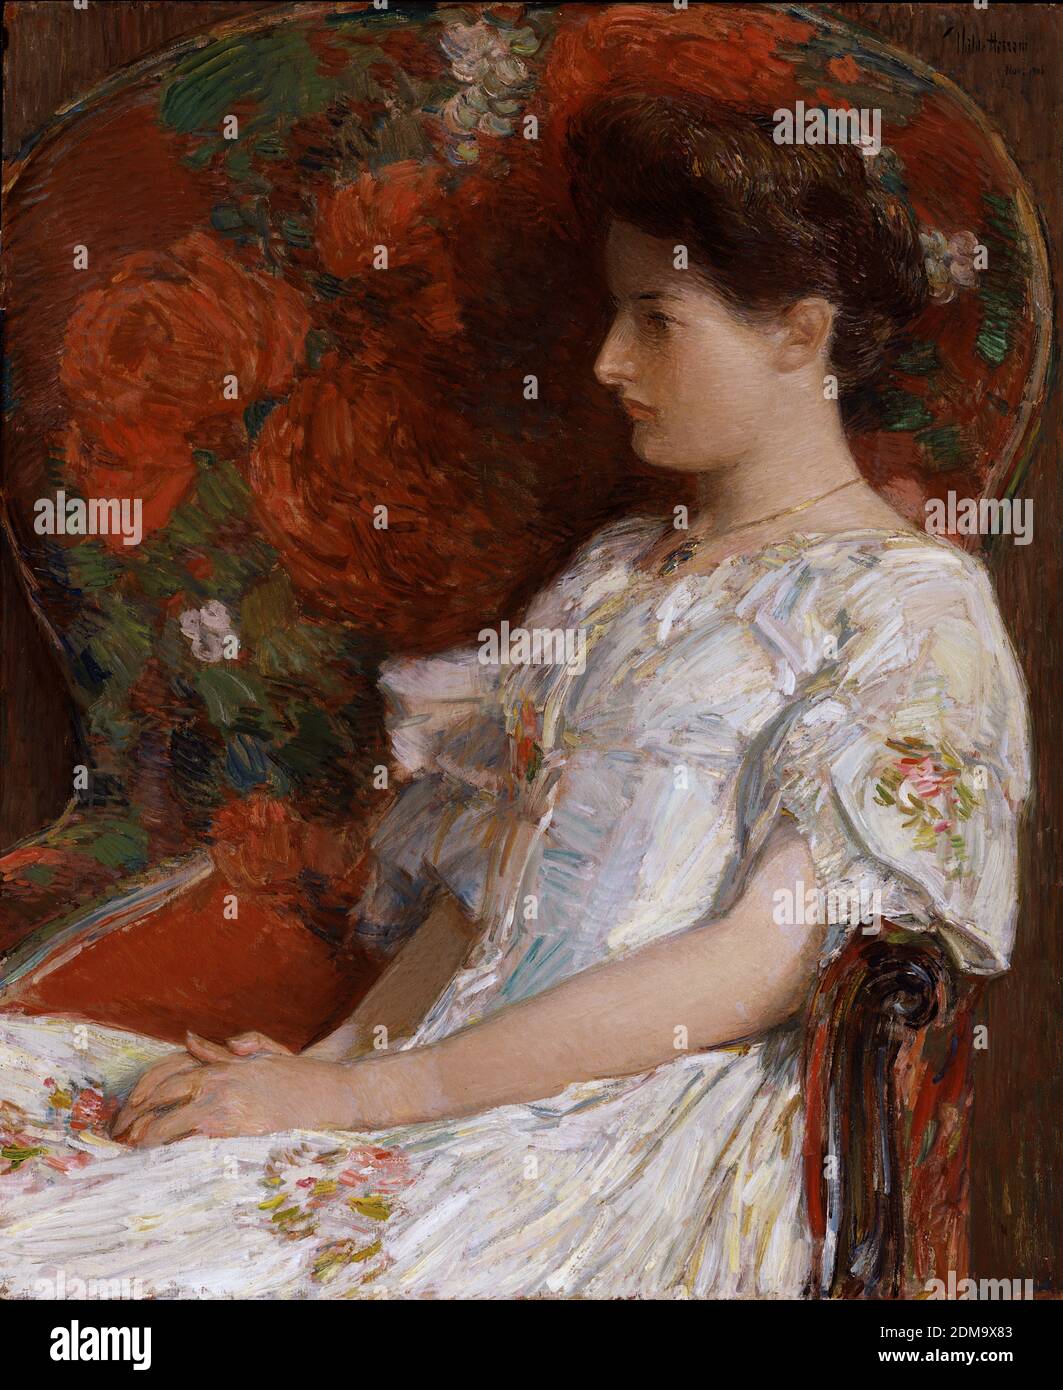 La sedia vittoriana 1906 American Impressionist Pittura di Childe Hassam - risoluzione e qualità dell'immagine molto elevate Foto Stock